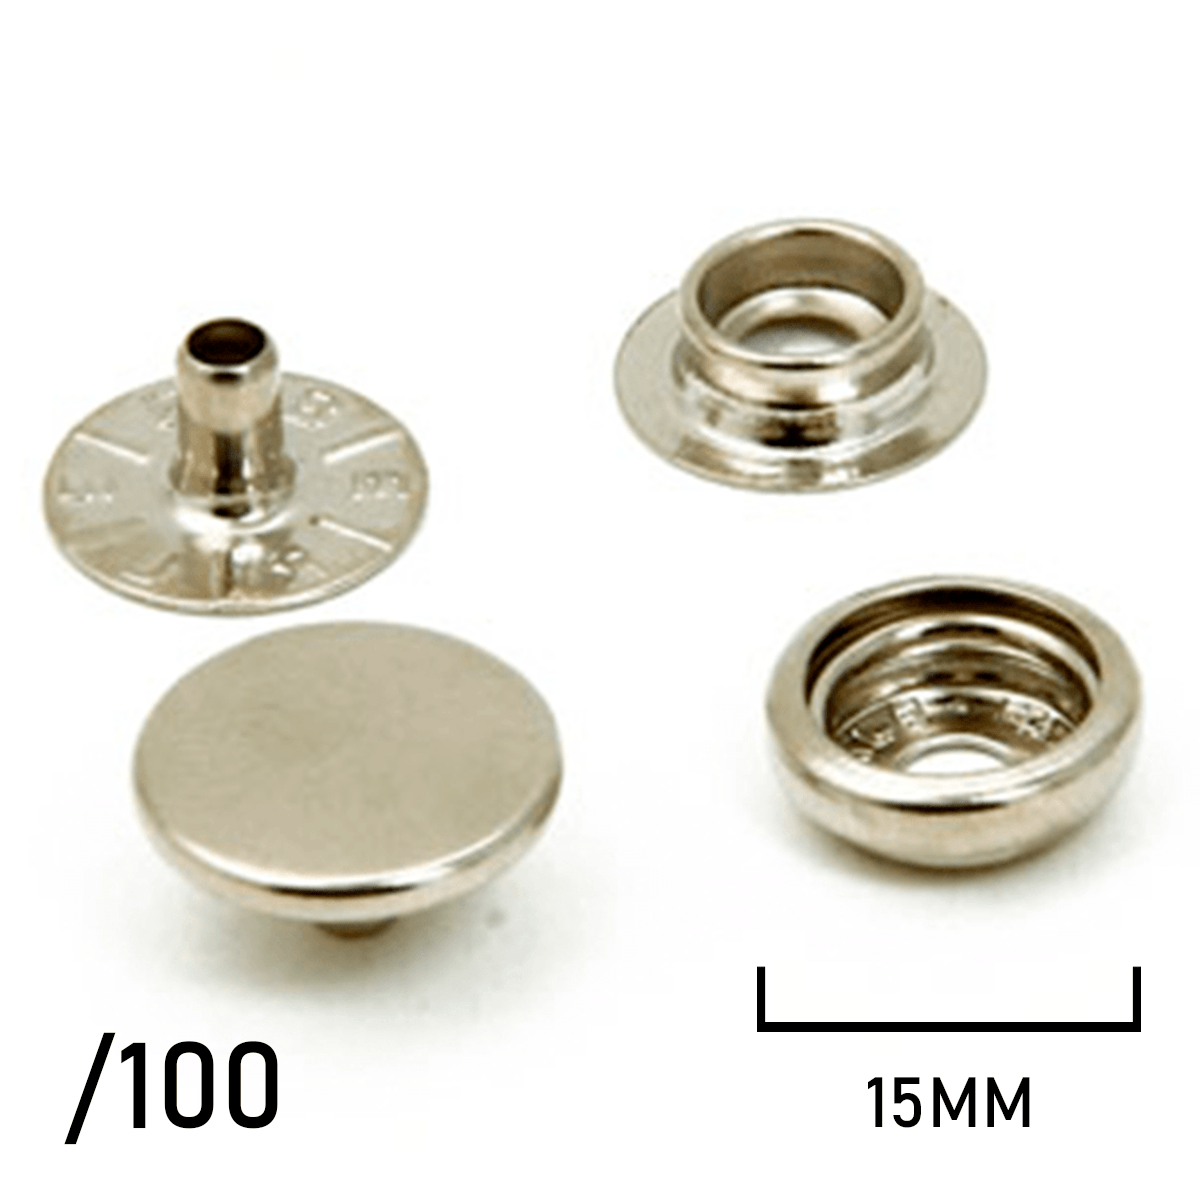 Botão de Pressão - Eberle - Latão - 15mm - C/200und - Ref: 150/100 - Cód: BT7.150.100.6.L